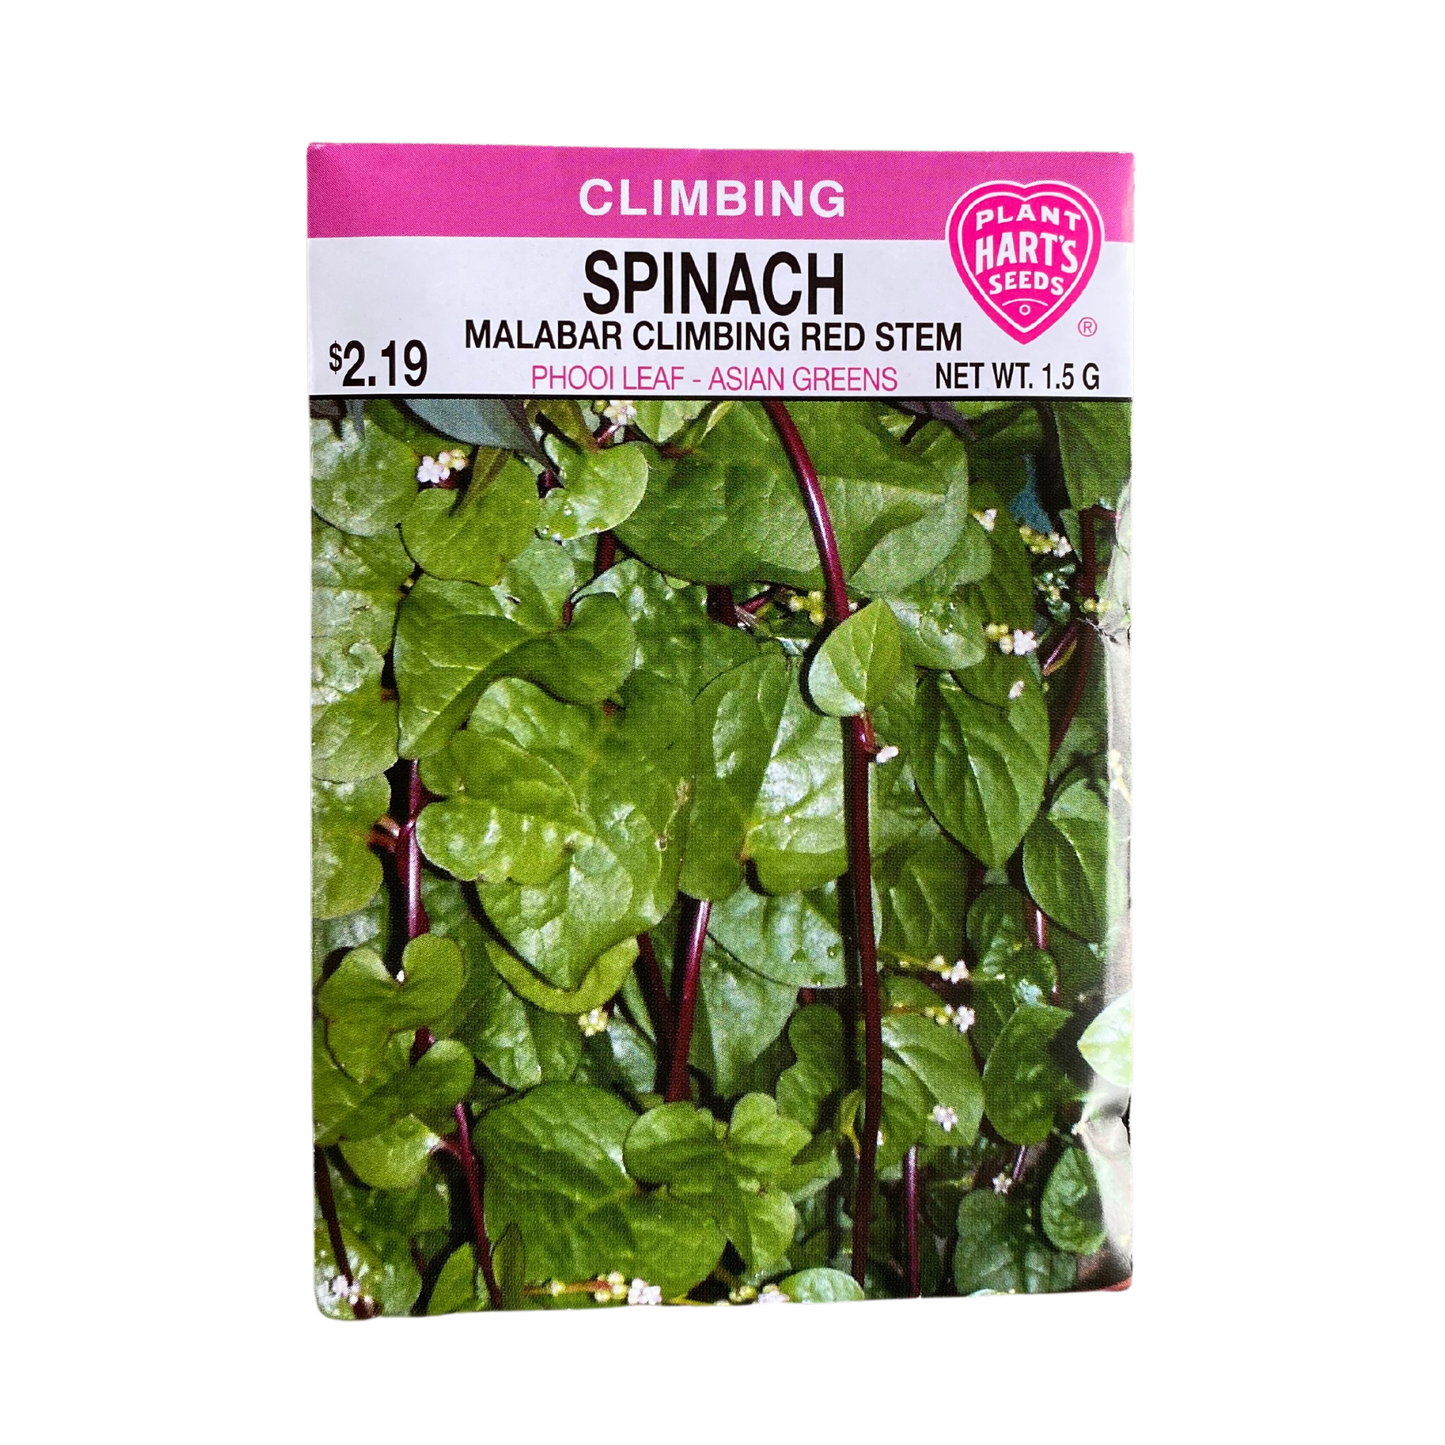 Spinach Malabar Climbing